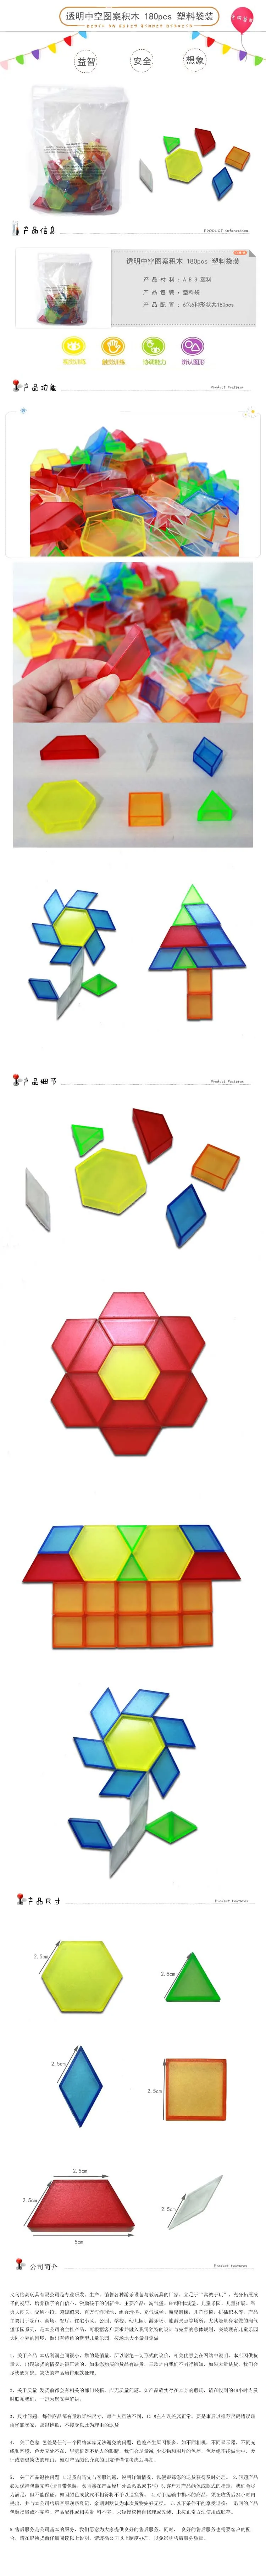 Математика, геометрические цветные прозрачные строительные блоки, Танграм, обучающая игрушка, детское раннее образование, Китай, наука